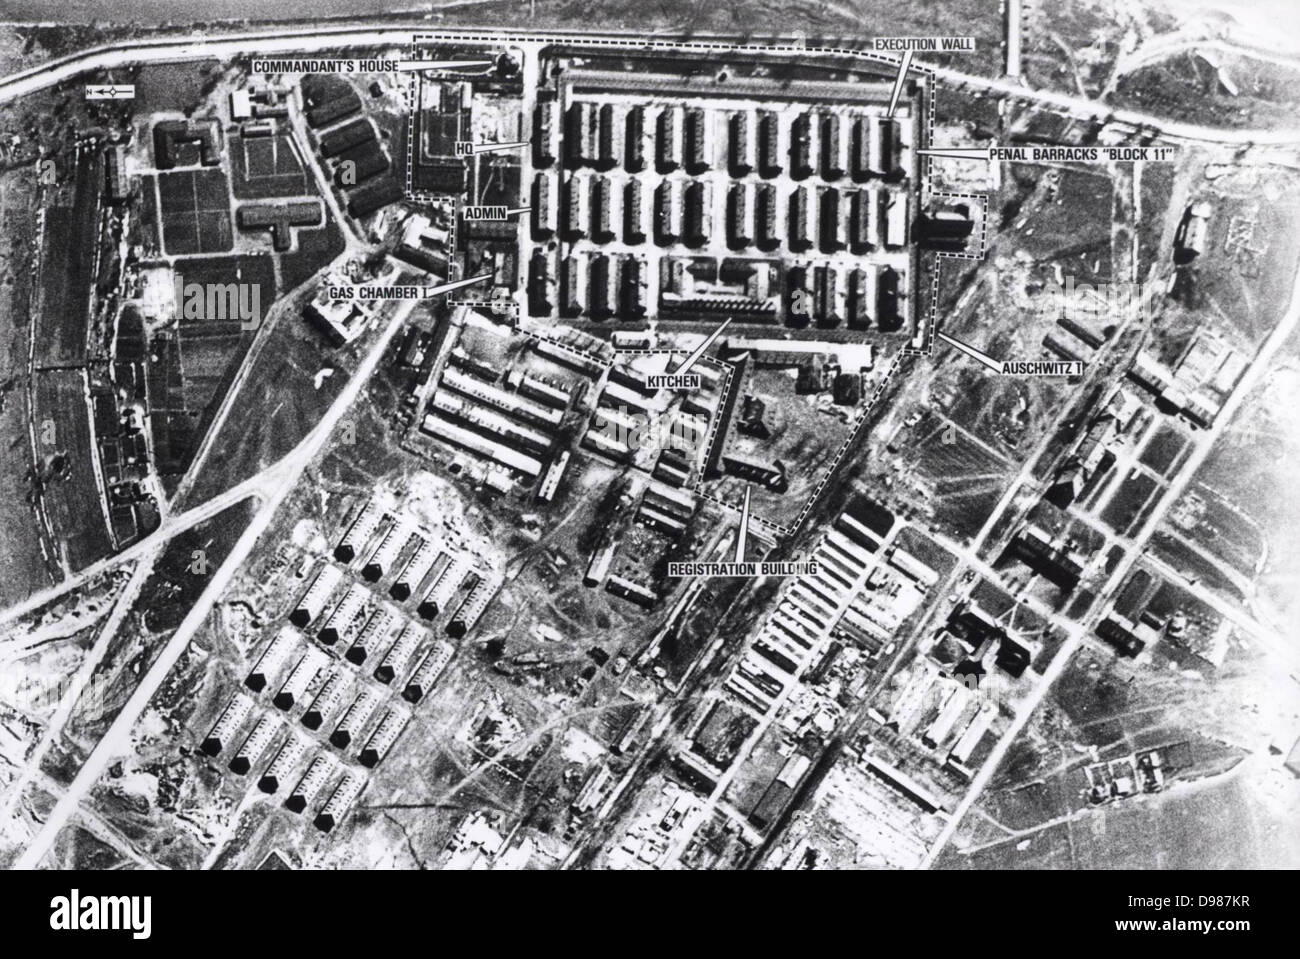 Vista aerea di Auschwitz I campo di concentramento, 4 aprile 1944. Auschwitz-Birkenau, Polonia, è stato il più grande dei nazisti tedeschi nei campi di concentramento e di sterminio durante la Seconda Guerra Mondiale. Foto Stock